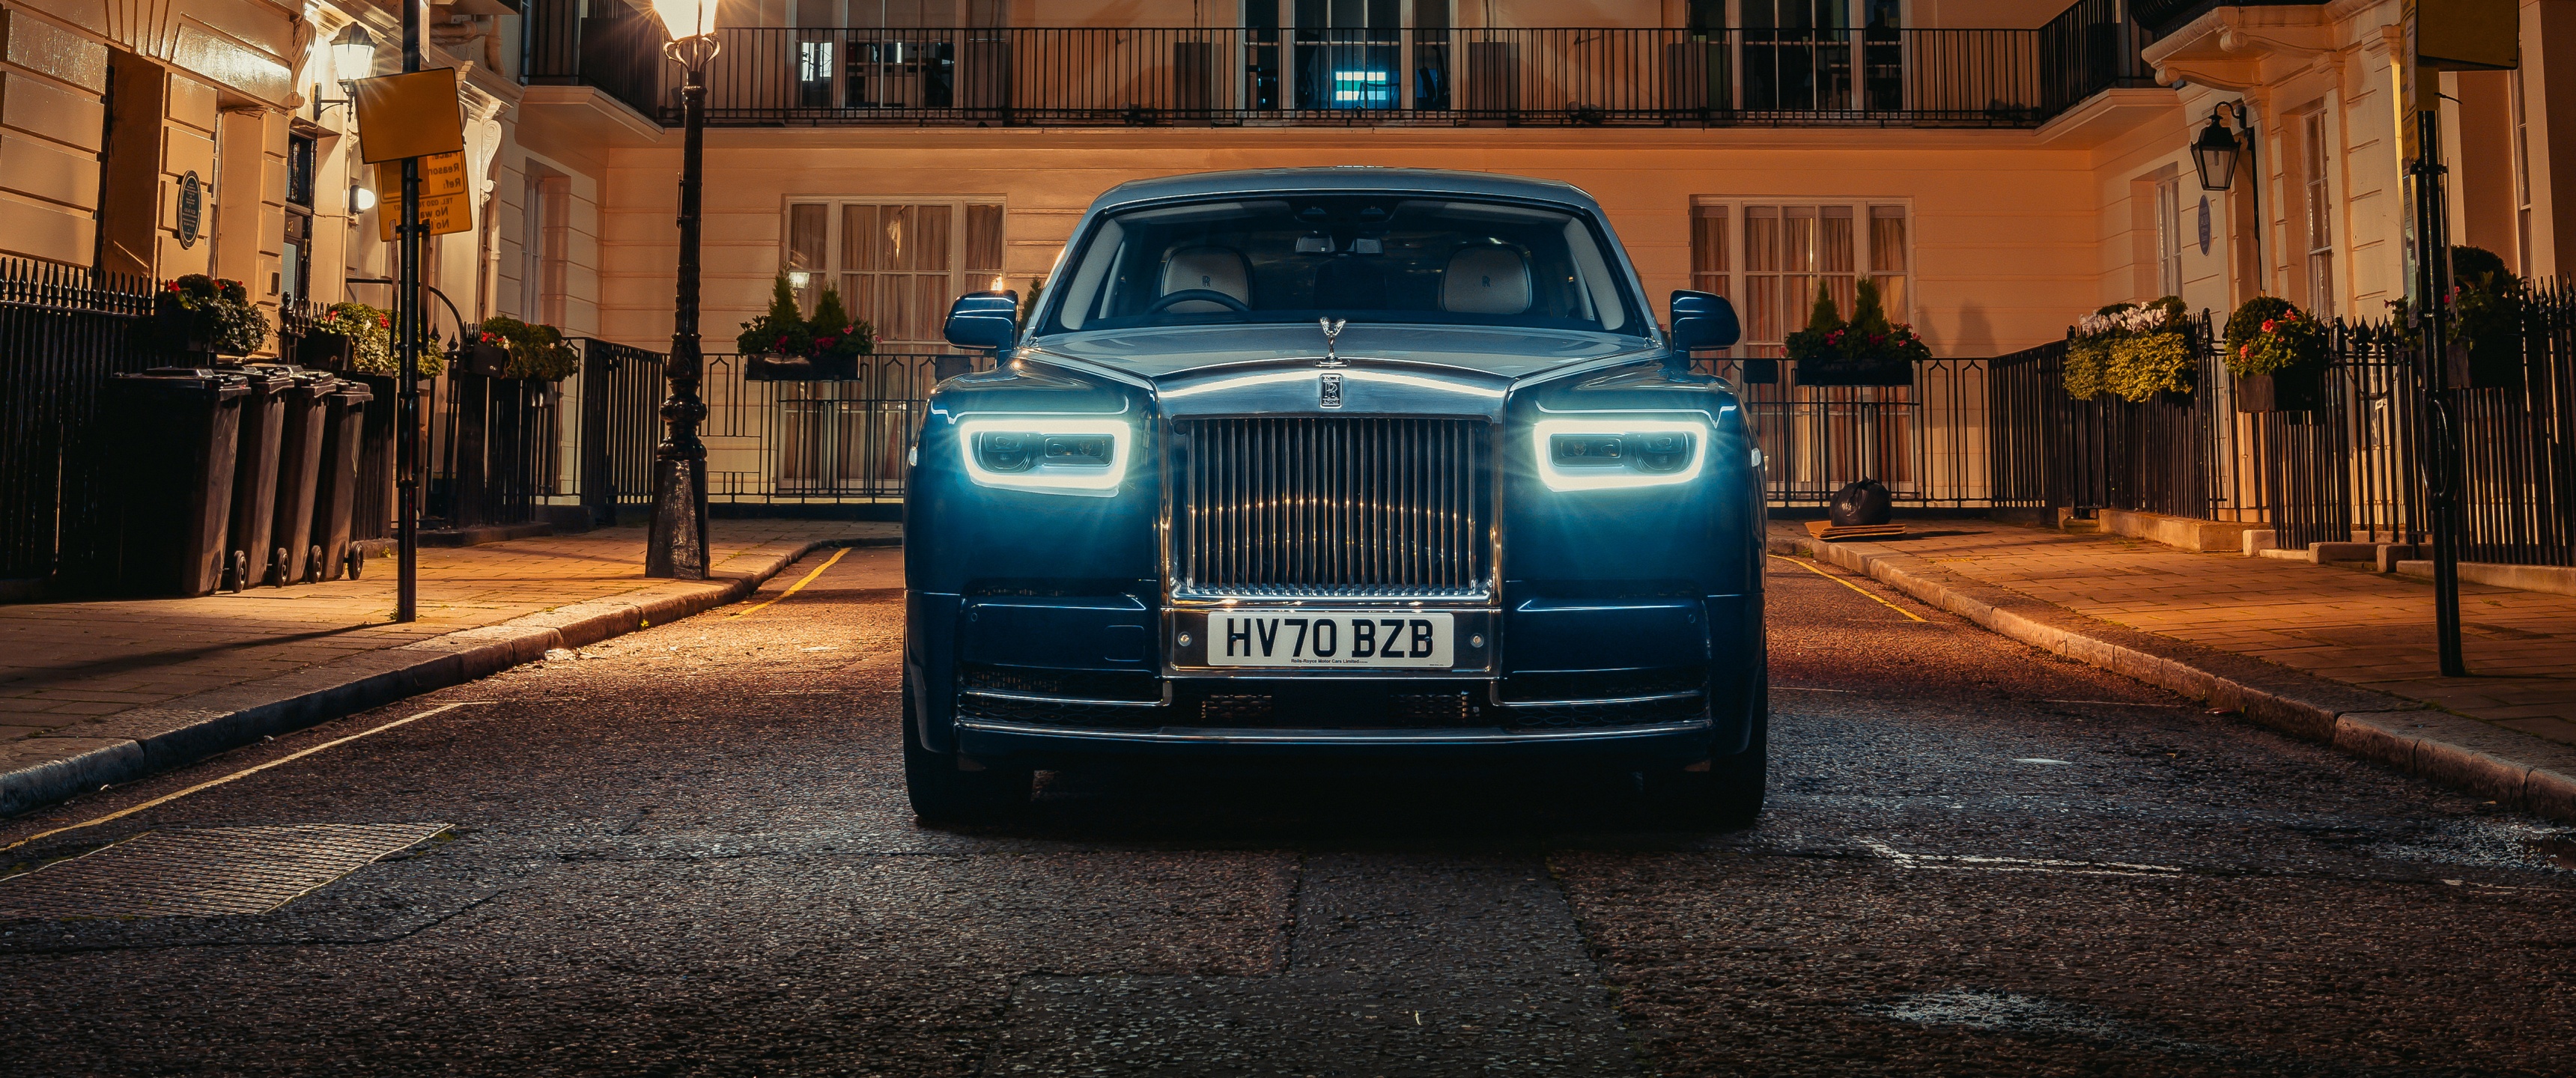 Rolls-Royce Phantom Extended Wallpaper 4K, 2021, 5K, Cars, #4914